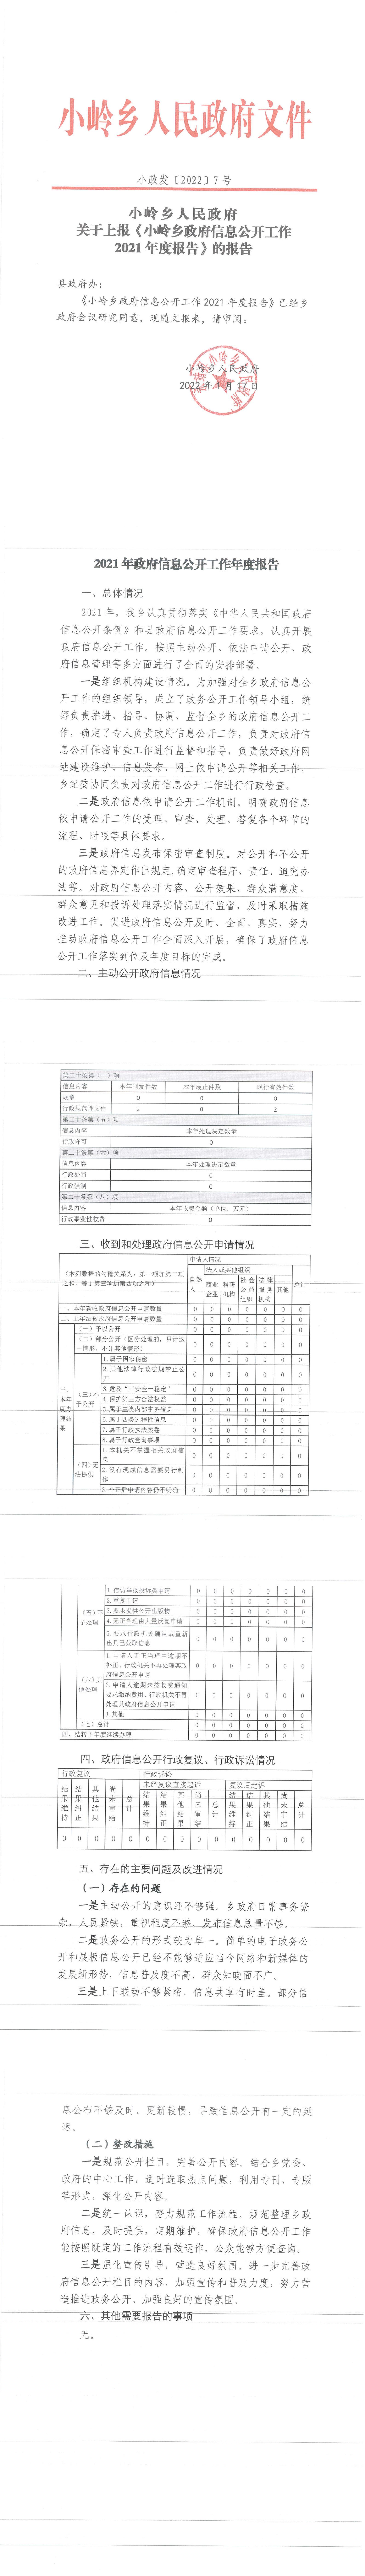 2021年度小岭乡政府信息公开工作报告.jpg